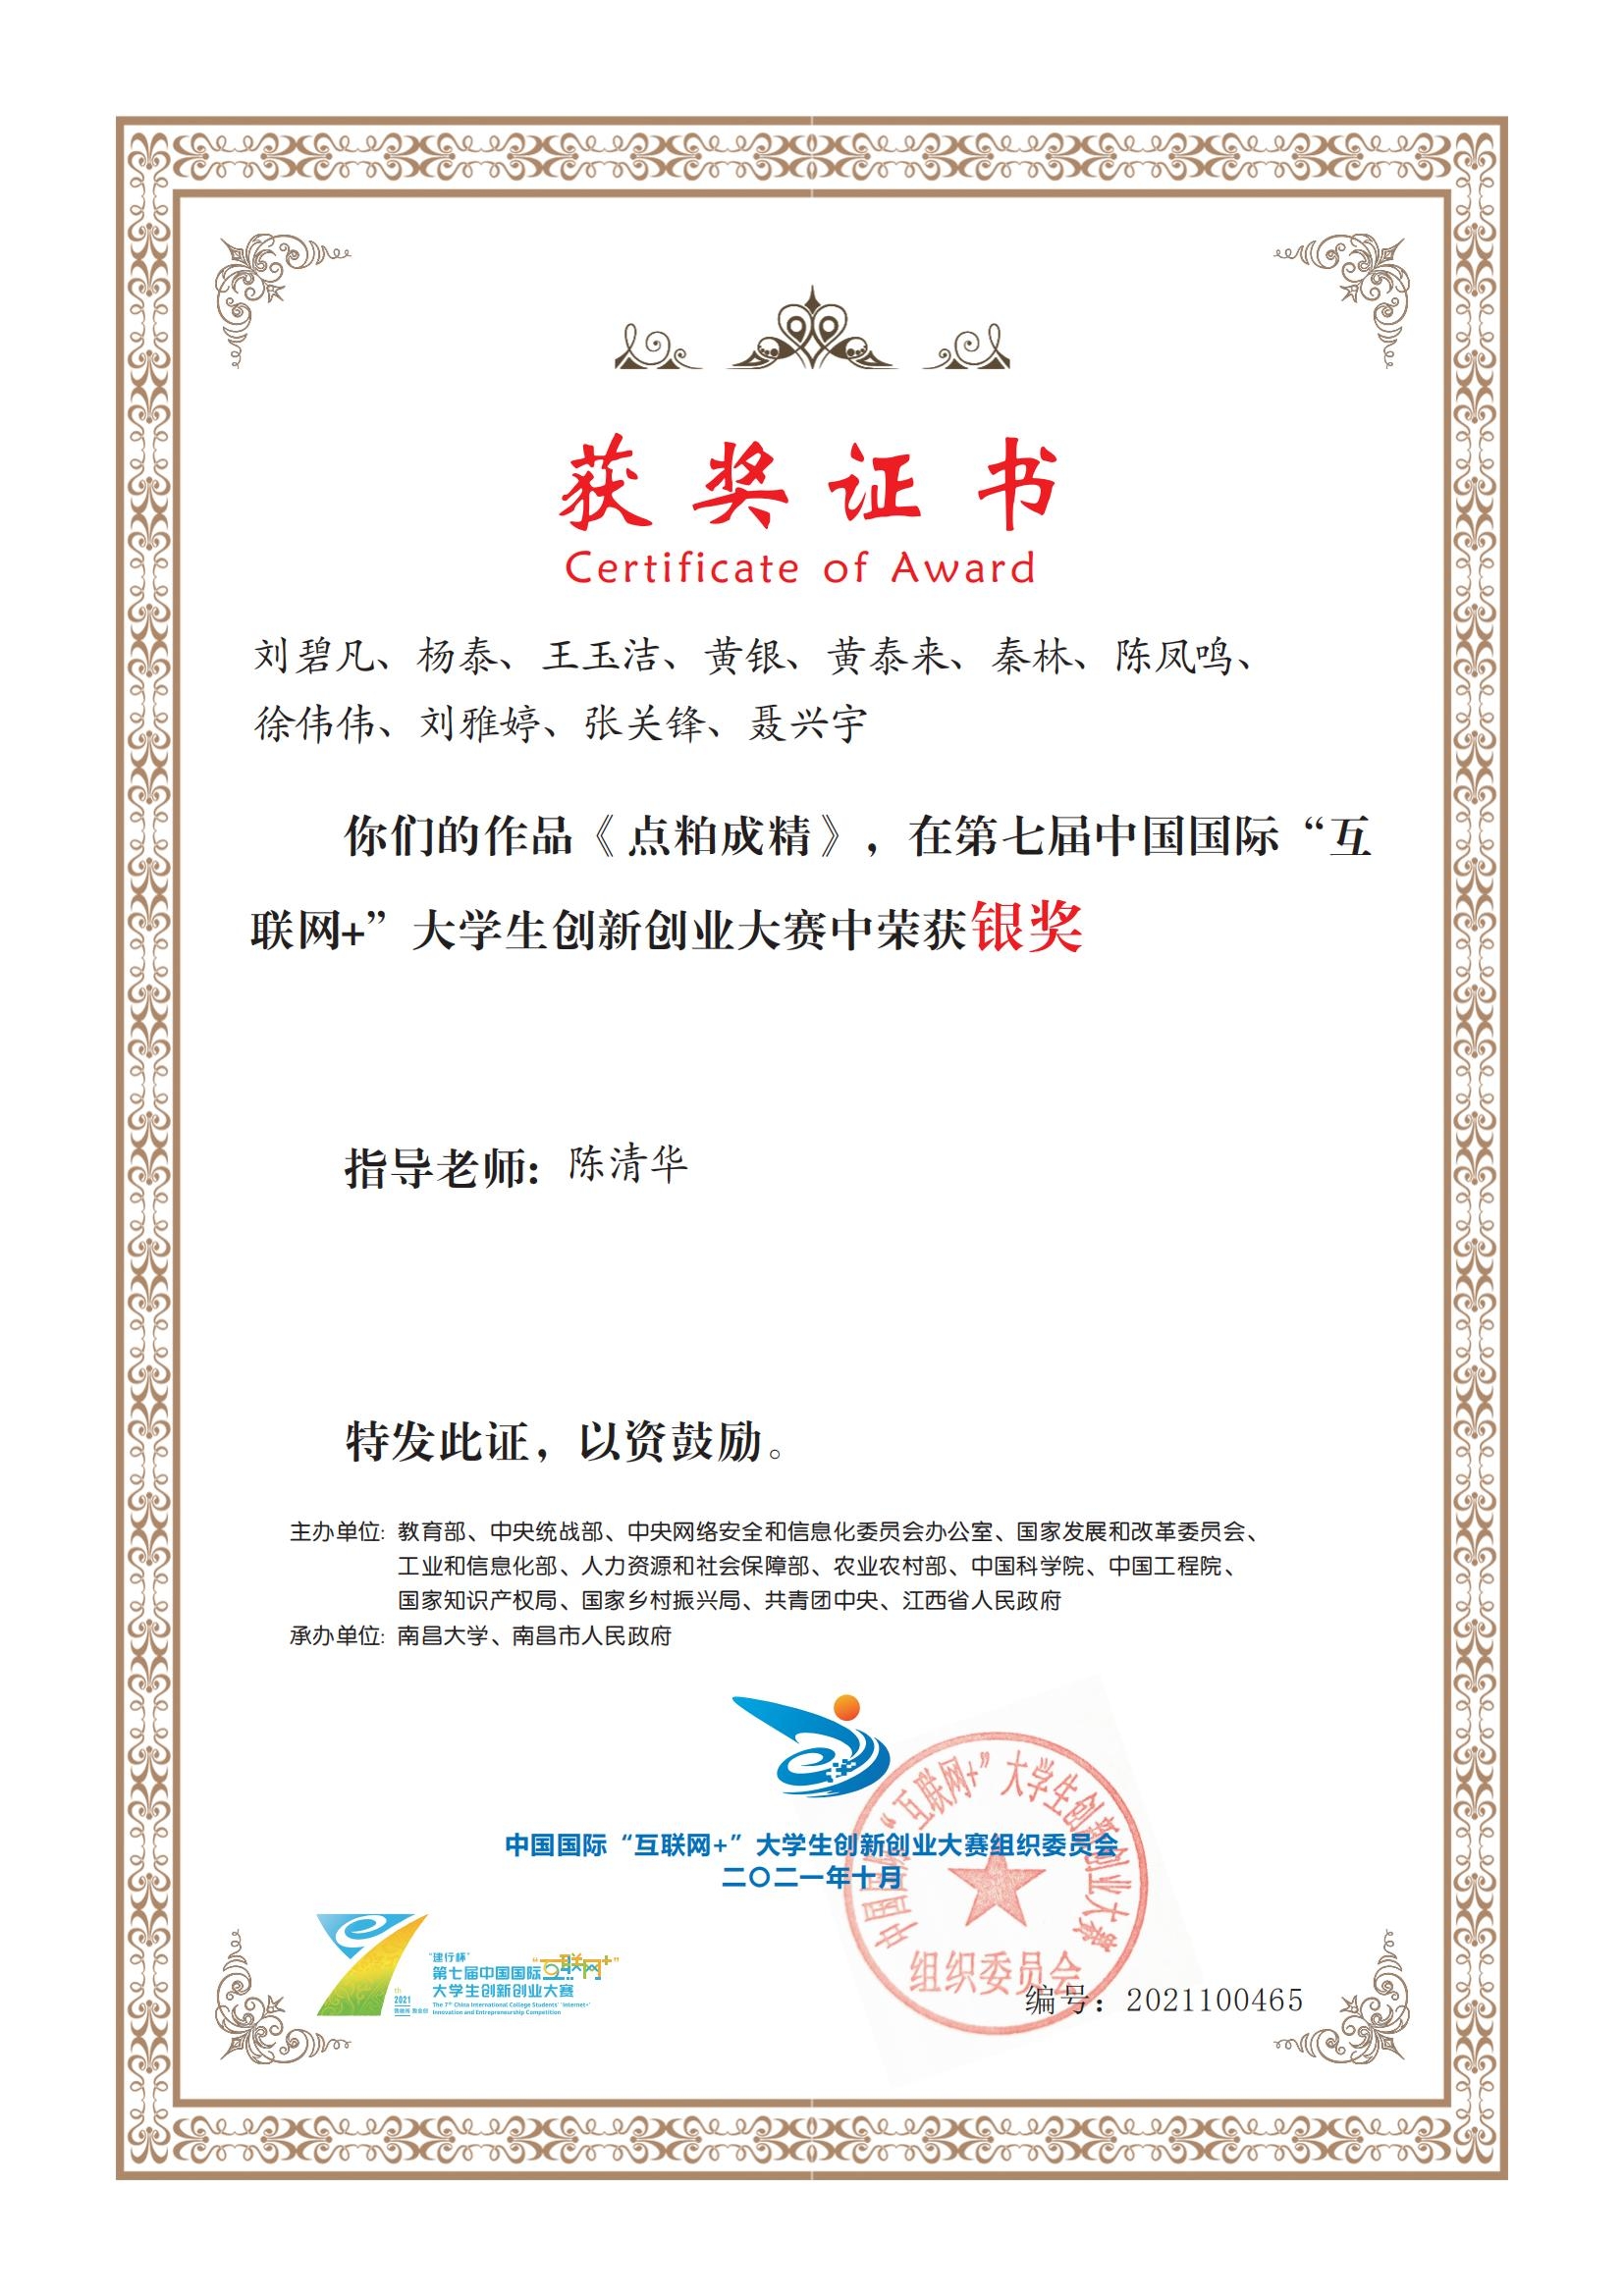 湖南农业大学《点粕成精》在第七届中国国际互联网+创新创业大赛